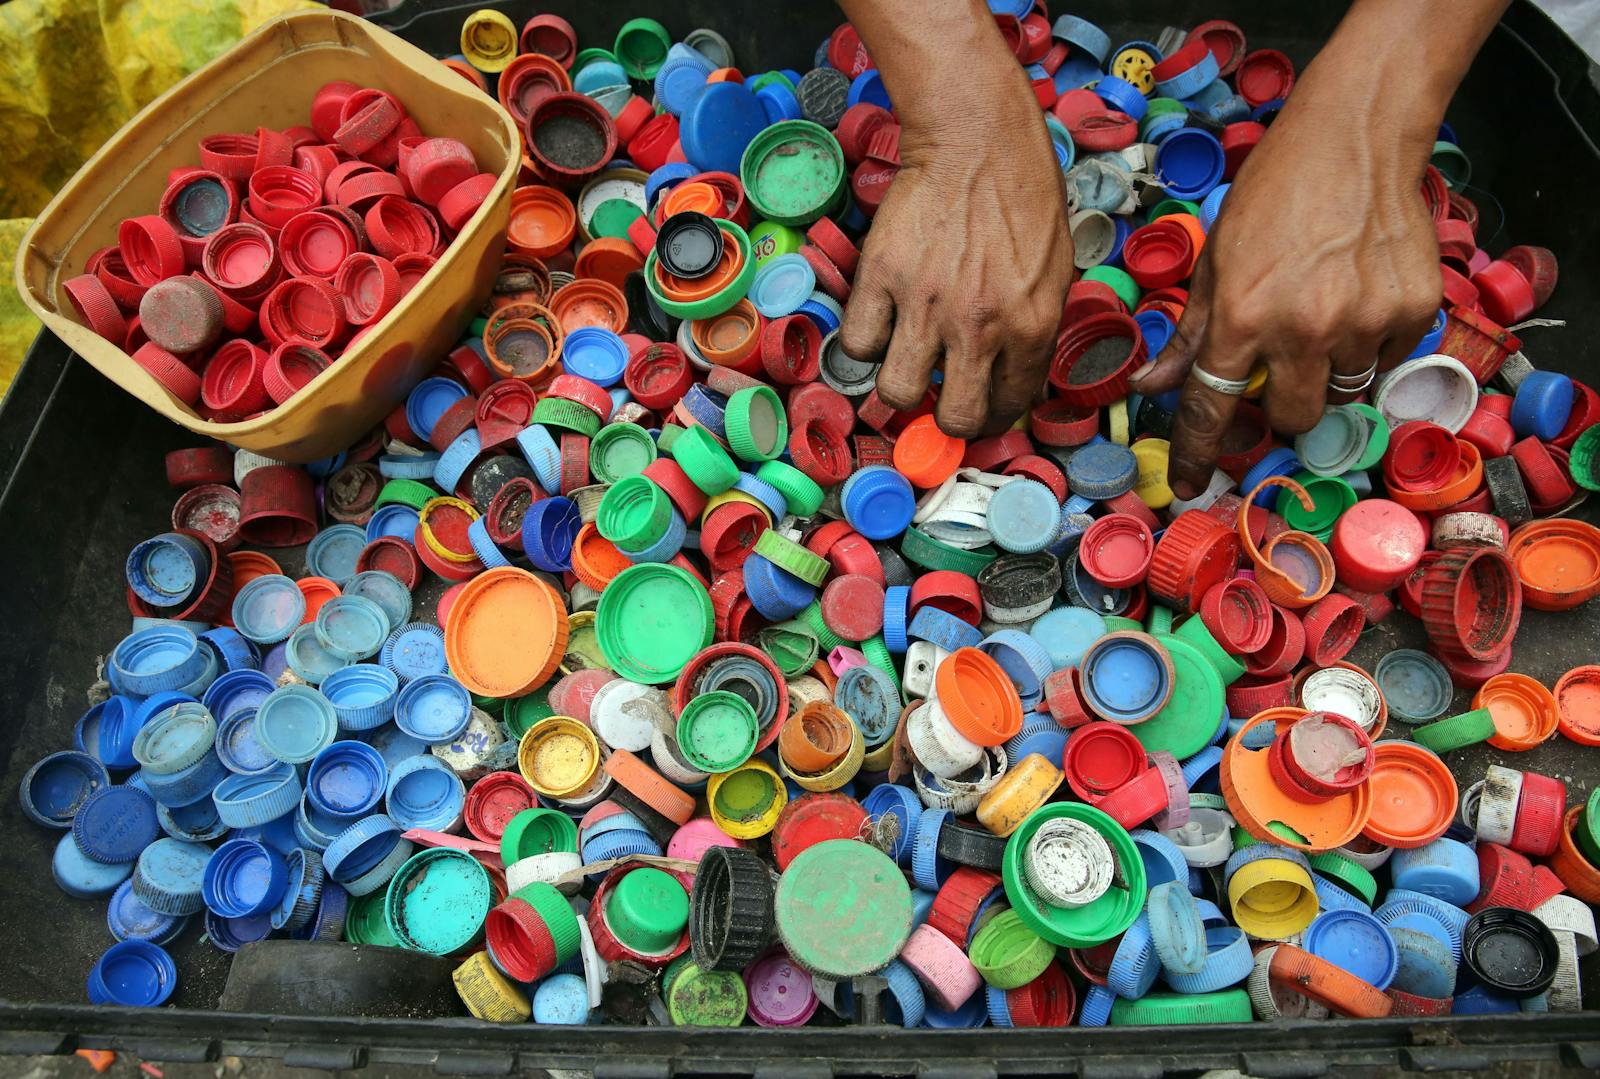 Reducing Plastic Waste